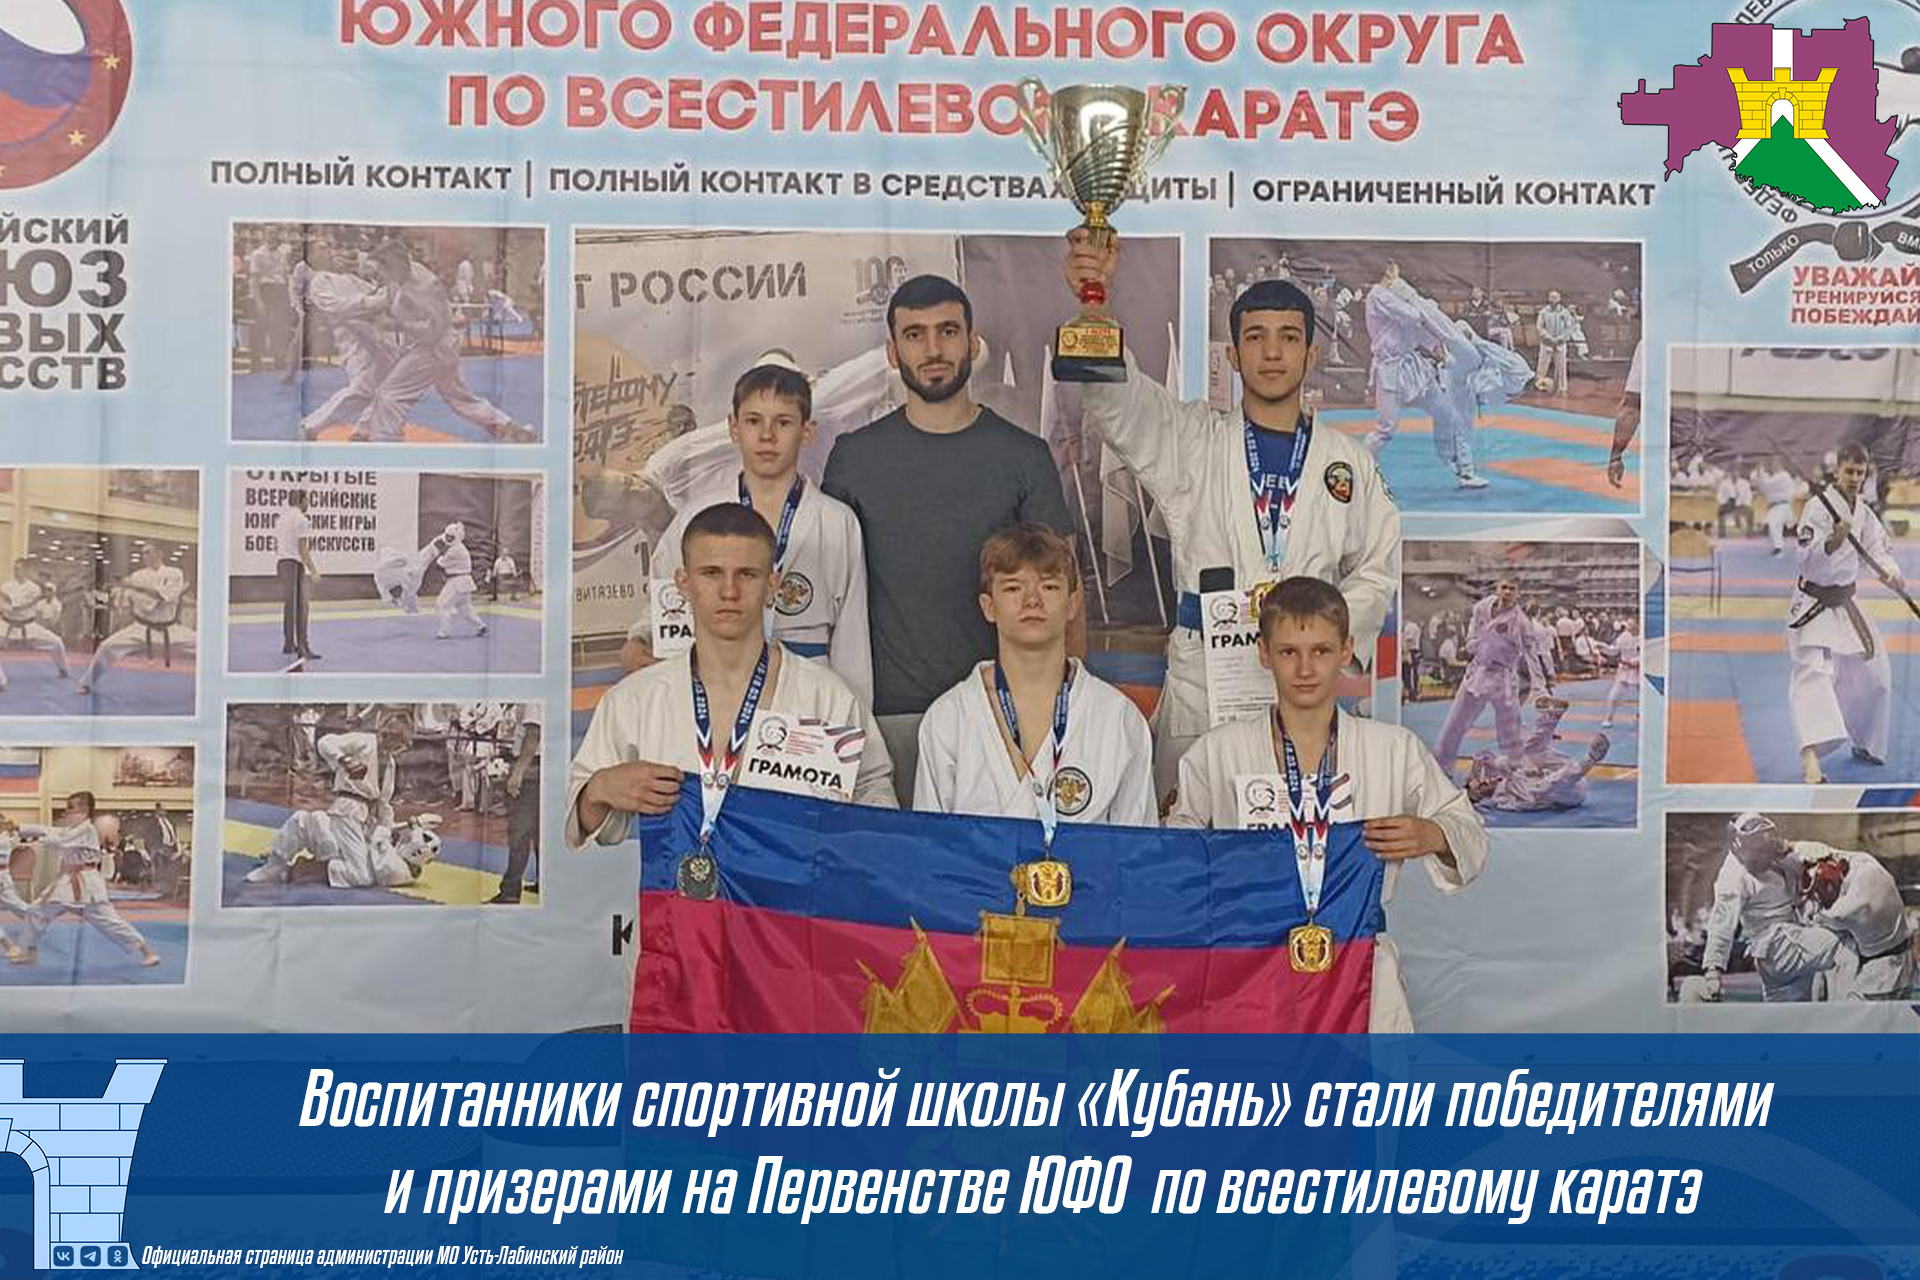 Воспитанники спортивной школы "Кубань" стали победителями и призерами на Первенстве ЮФО по всестилевому каратэ